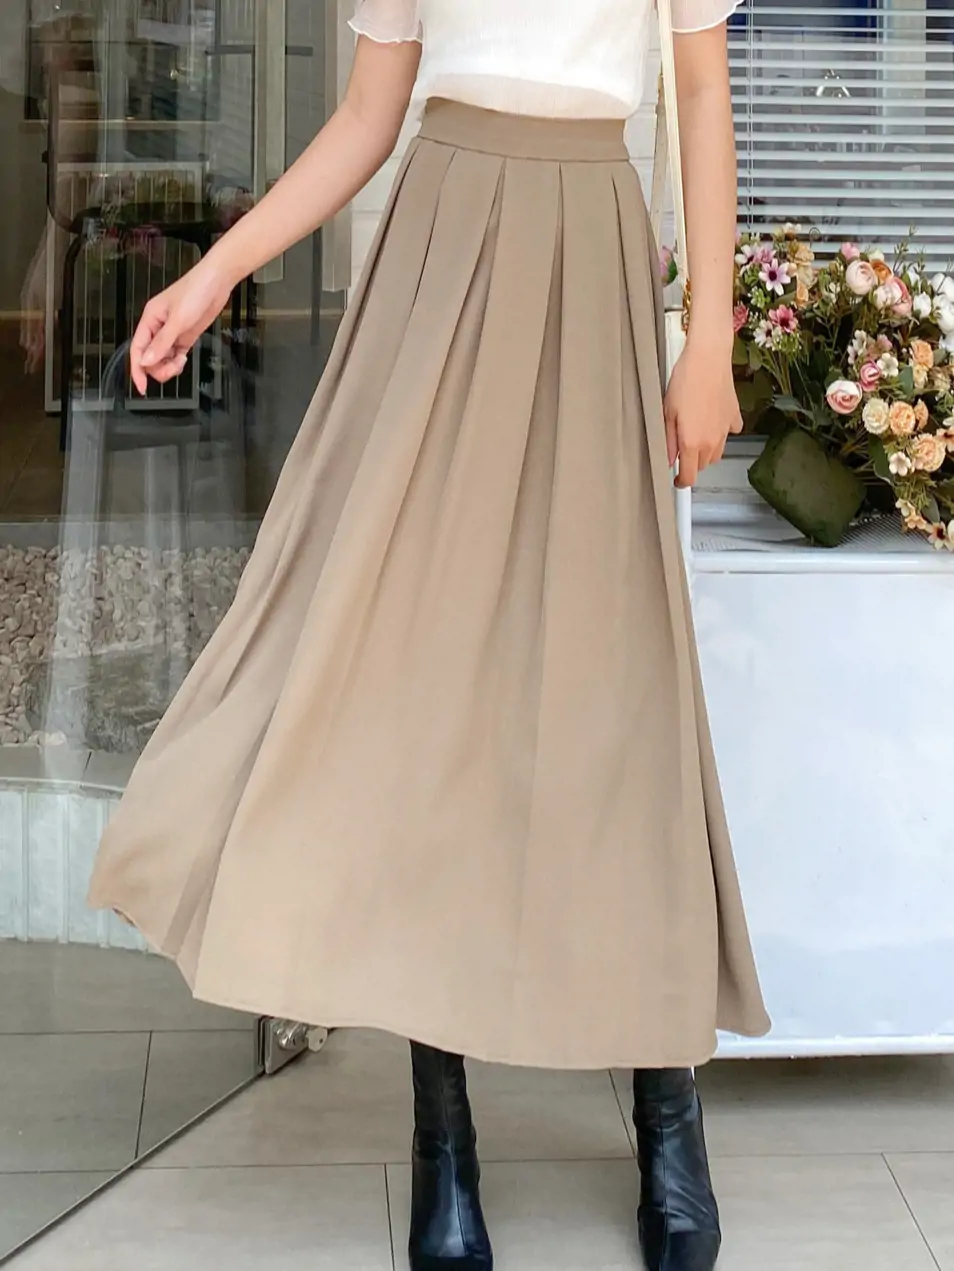 Chân váy dài họa tiết nữ tính ulzzang form rộng dễ mặc - Made by Fiin